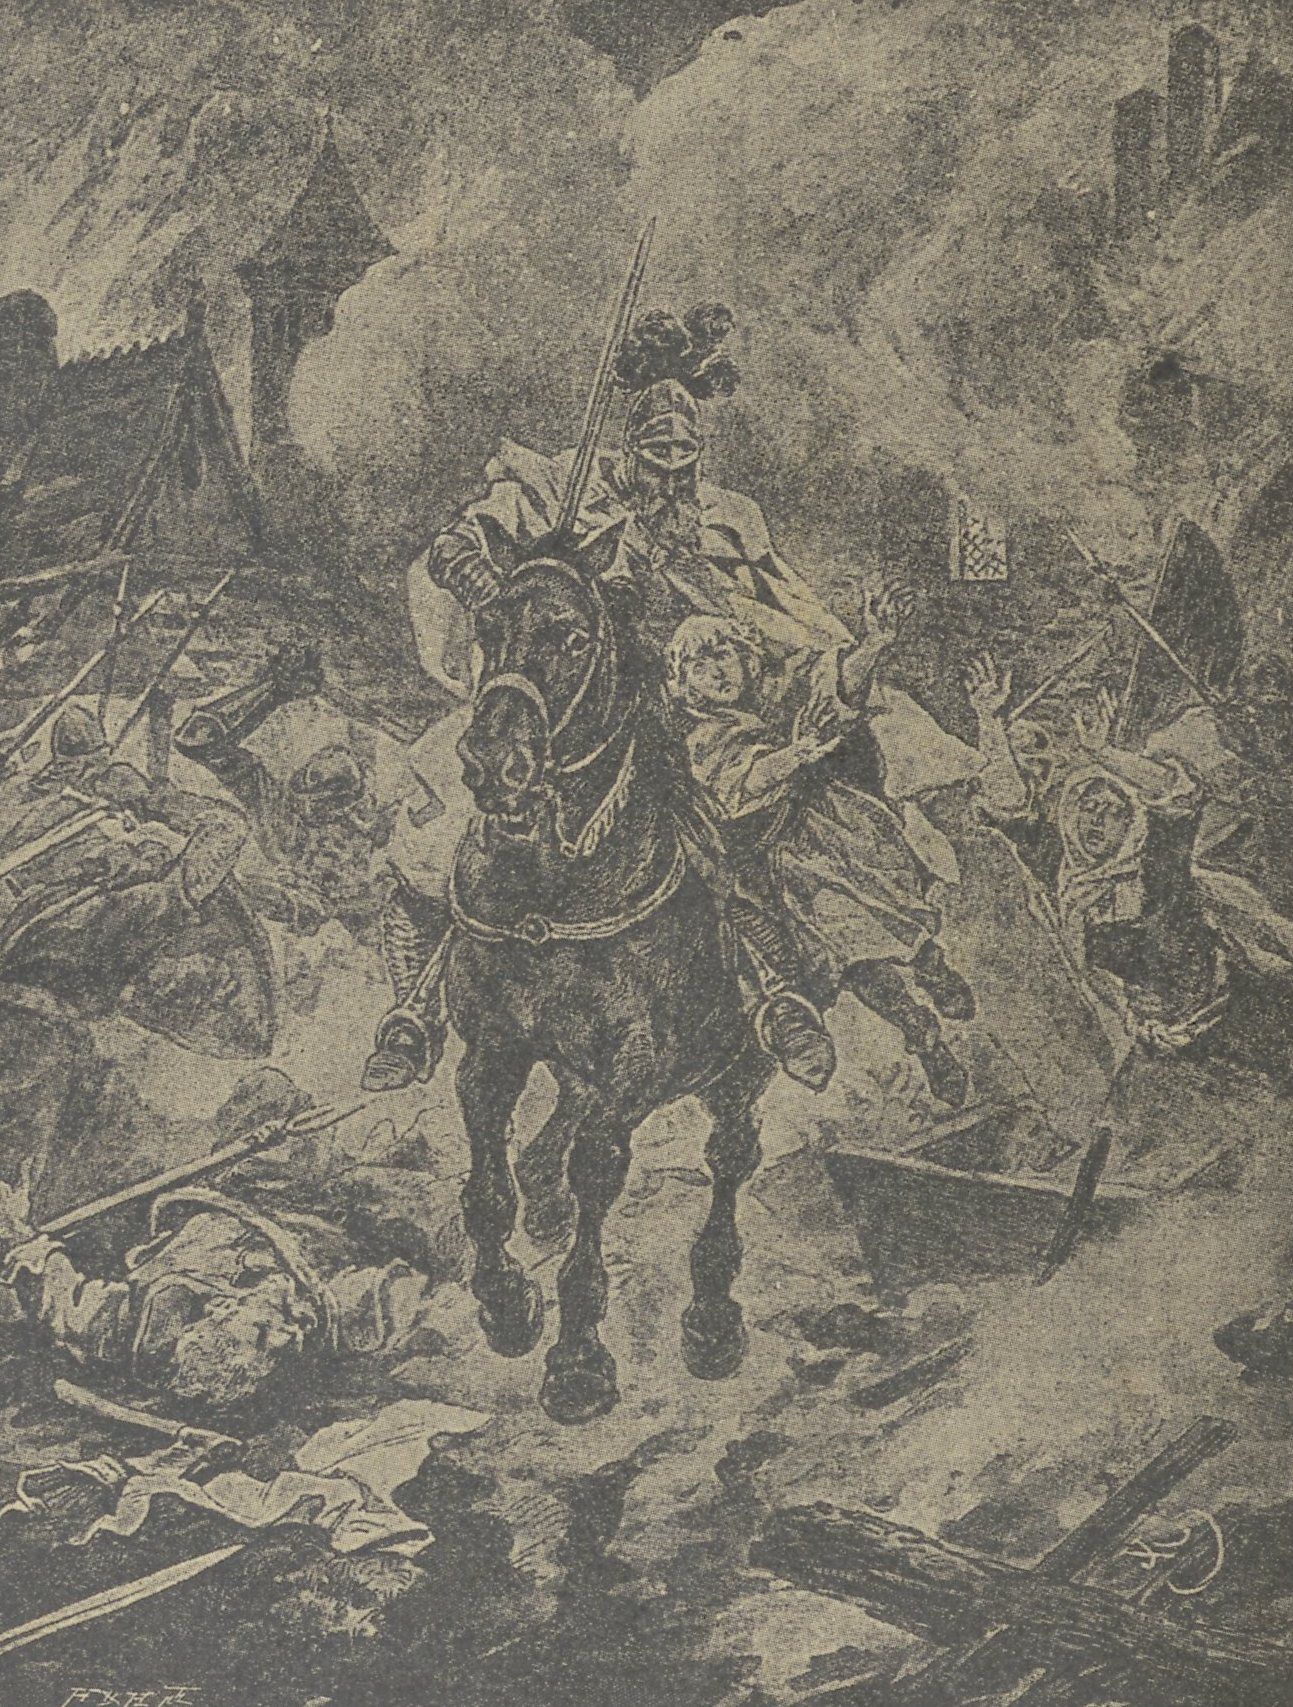 XIX-wieczny rysunek przedstawiający Krzyżaka wracającego z łupem z wyprawy.XIX-wieczny rysunek przedstawiający Krzyżaka wracającego z łupem z wyprawy.